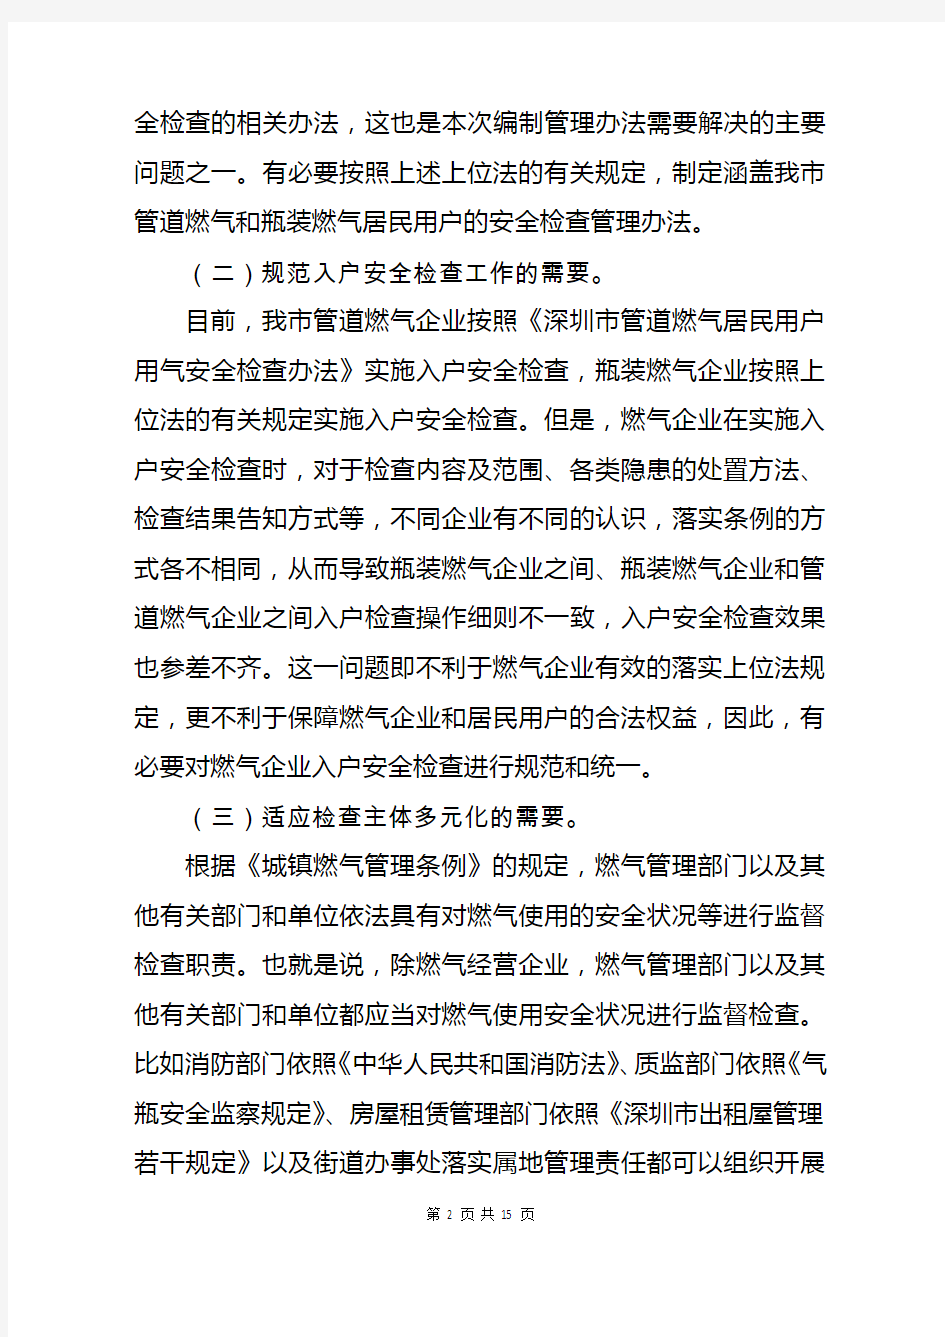 《深圳市居民用户燃气安全检查管理办法》(征求意见稿)起草说明